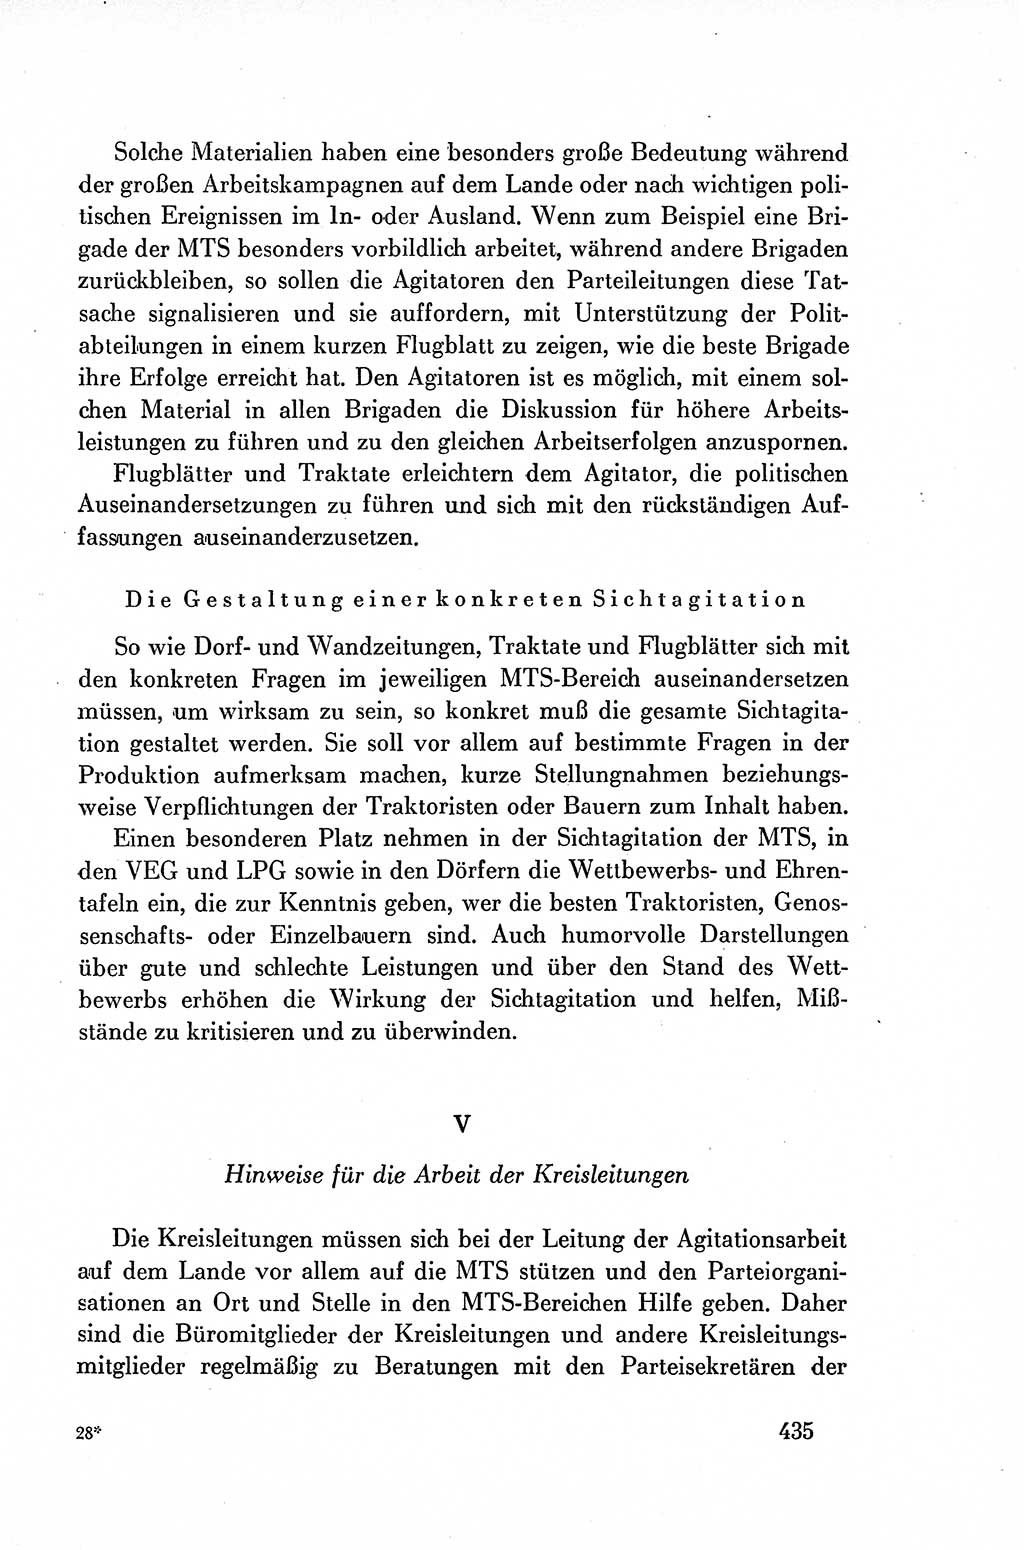 Dokumente der Sozialistischen Einheitspartei Deutschlands (SED) [Deutsche Demokratische Republik (DDR)] 1954-1955, Seite 435 (Dok. SED DDR 1954-1955, S. 435)